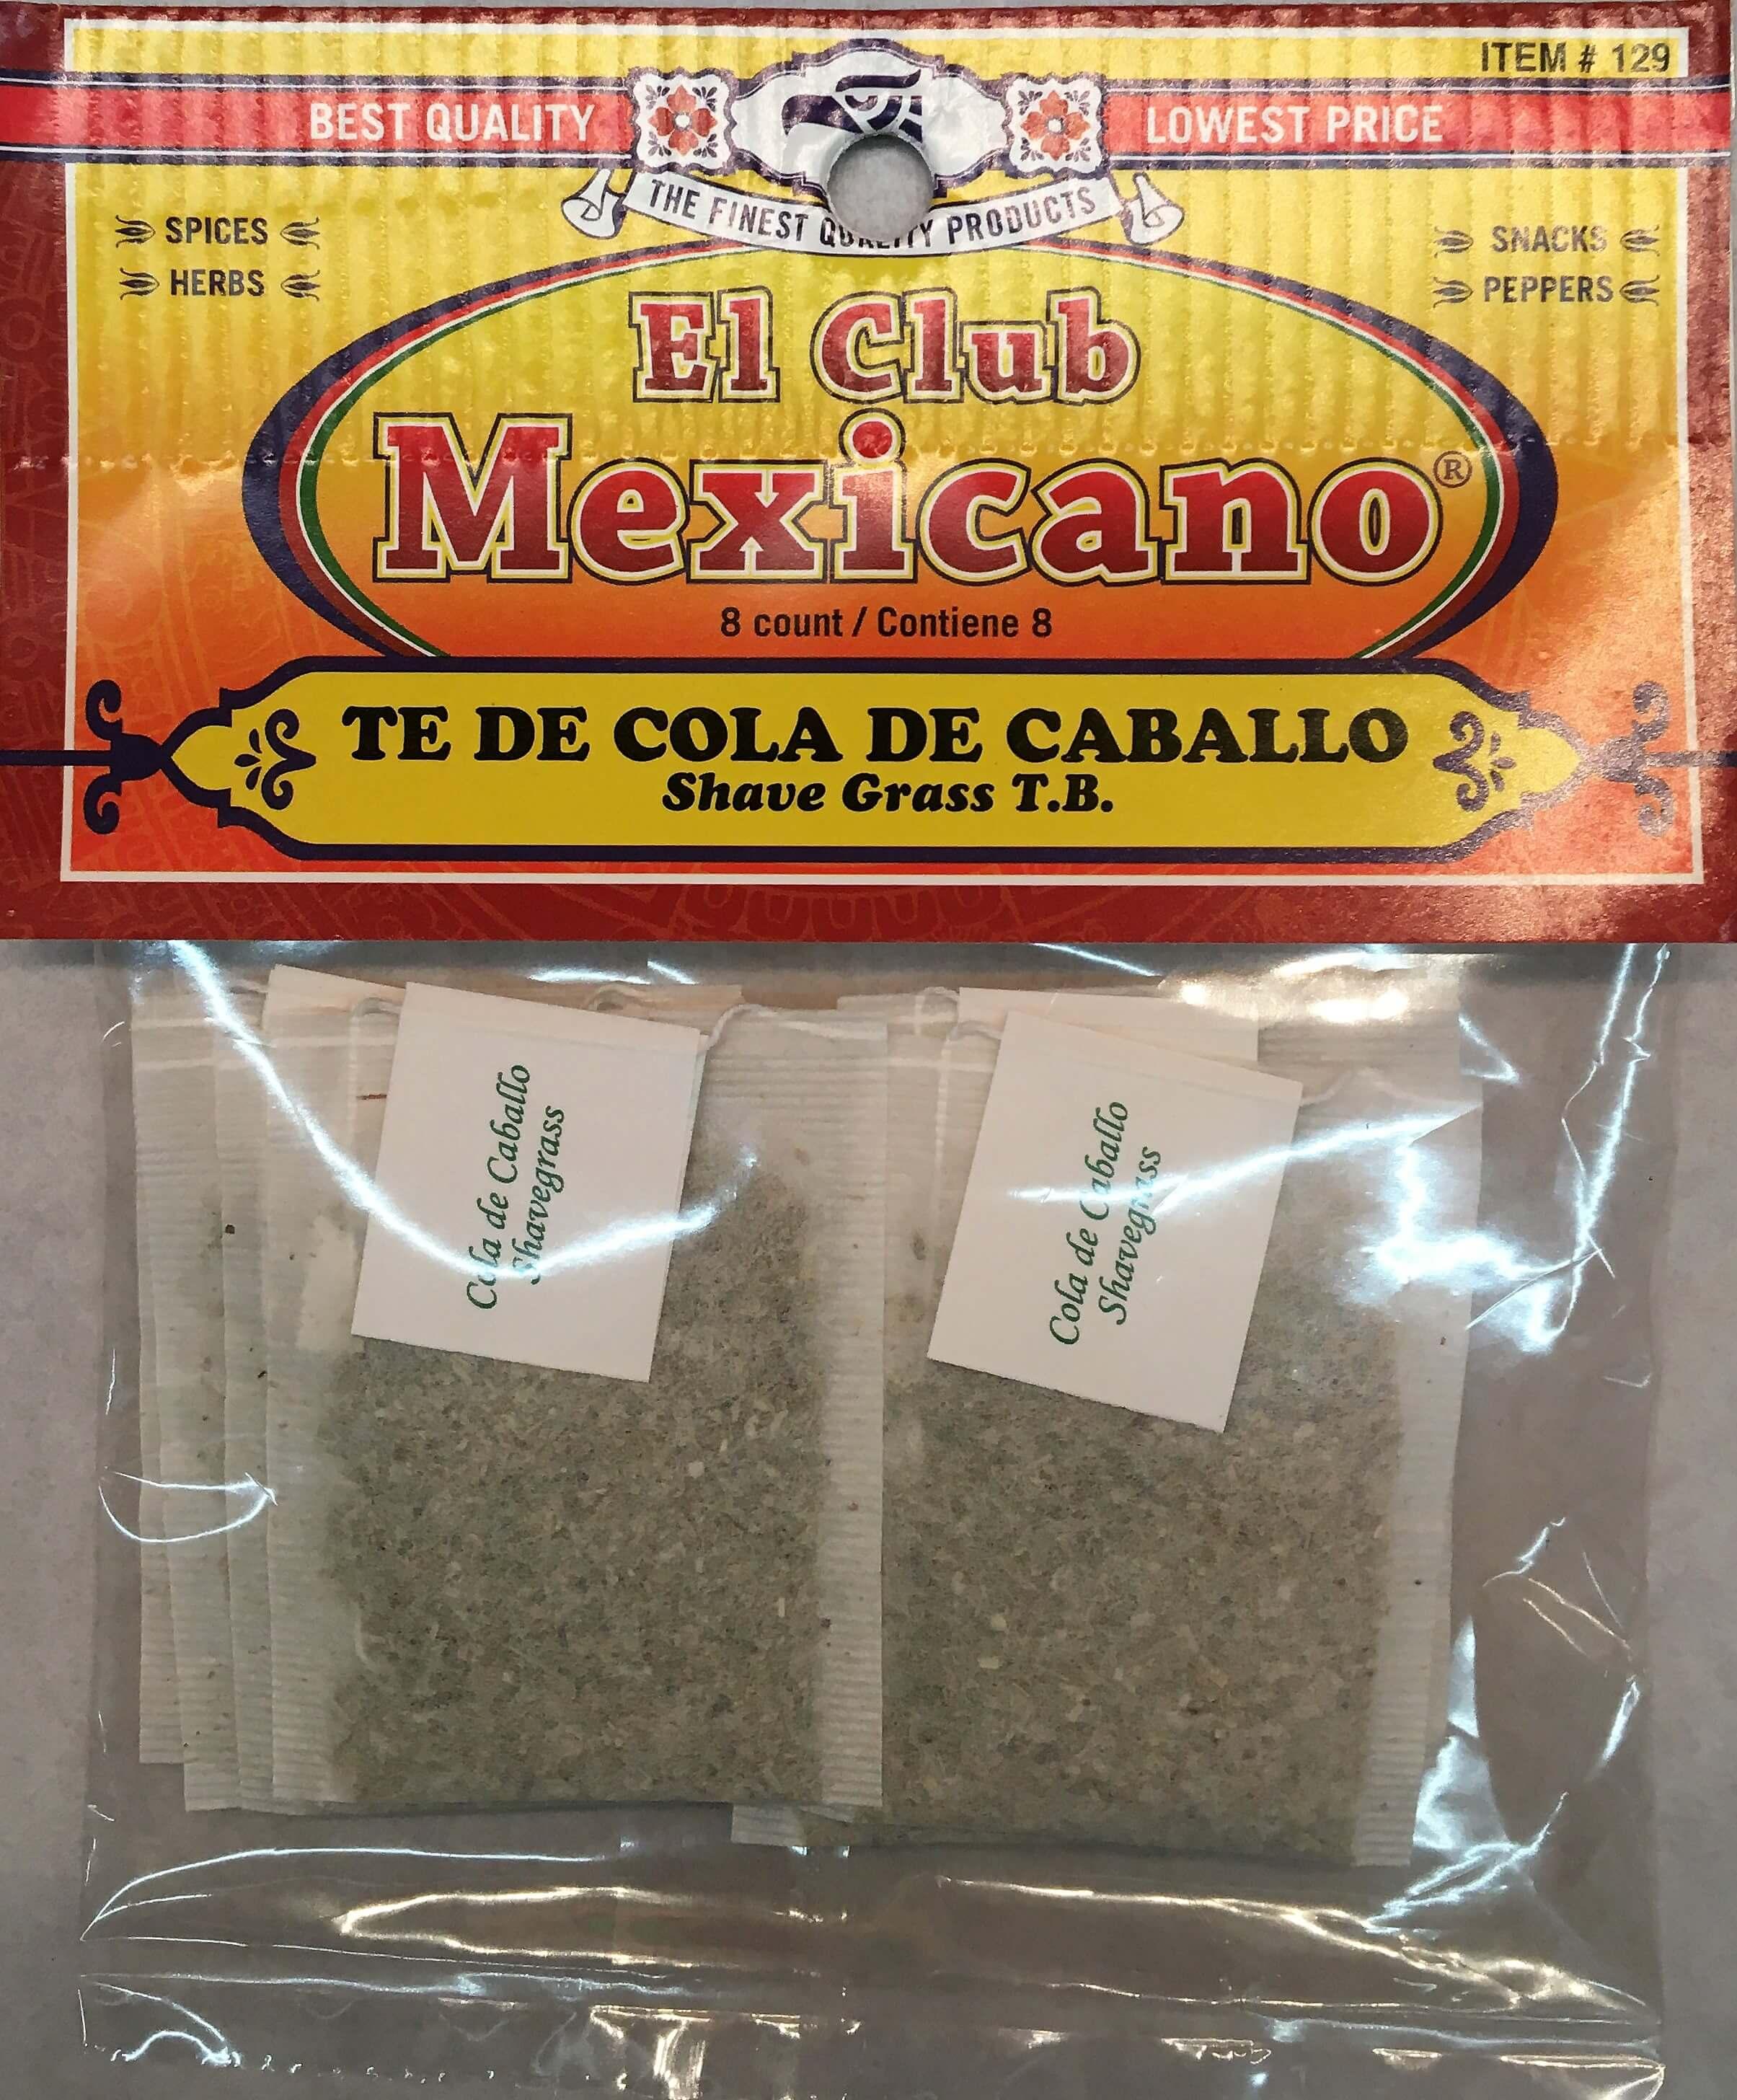 El Club Mexicano - Shave Grass T.B. 8 count.